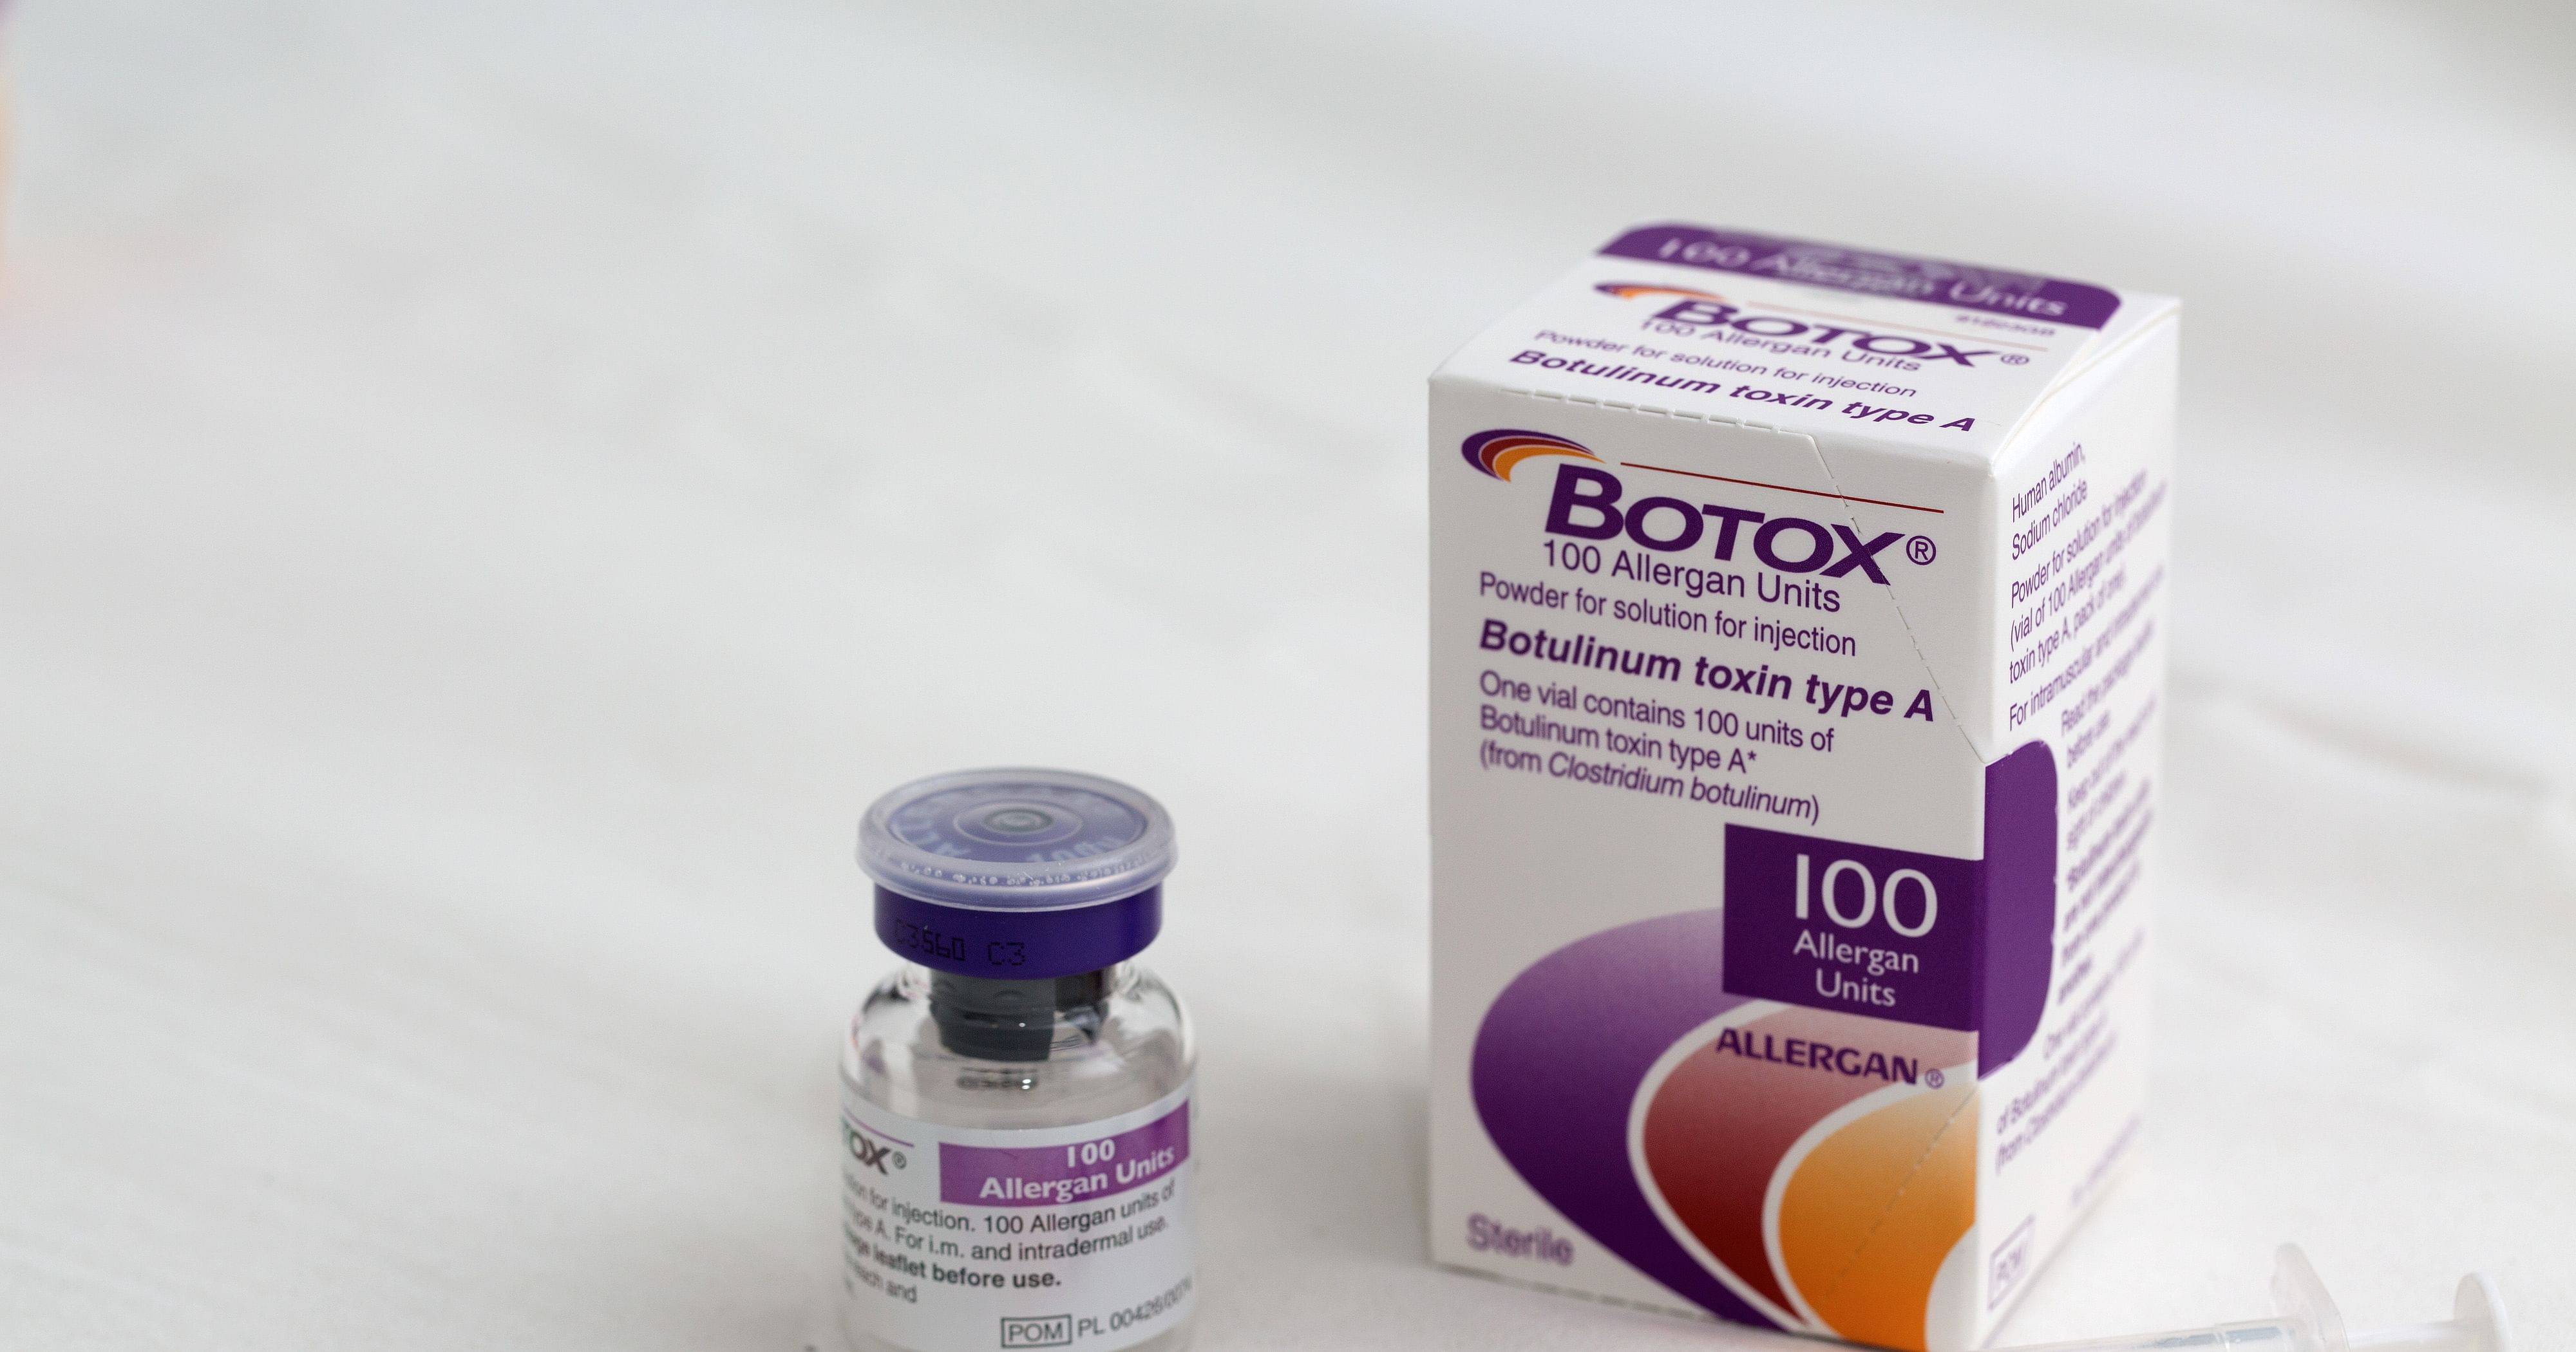 "ботокс" от "аллерган": описание препарата, применение и противопоказания